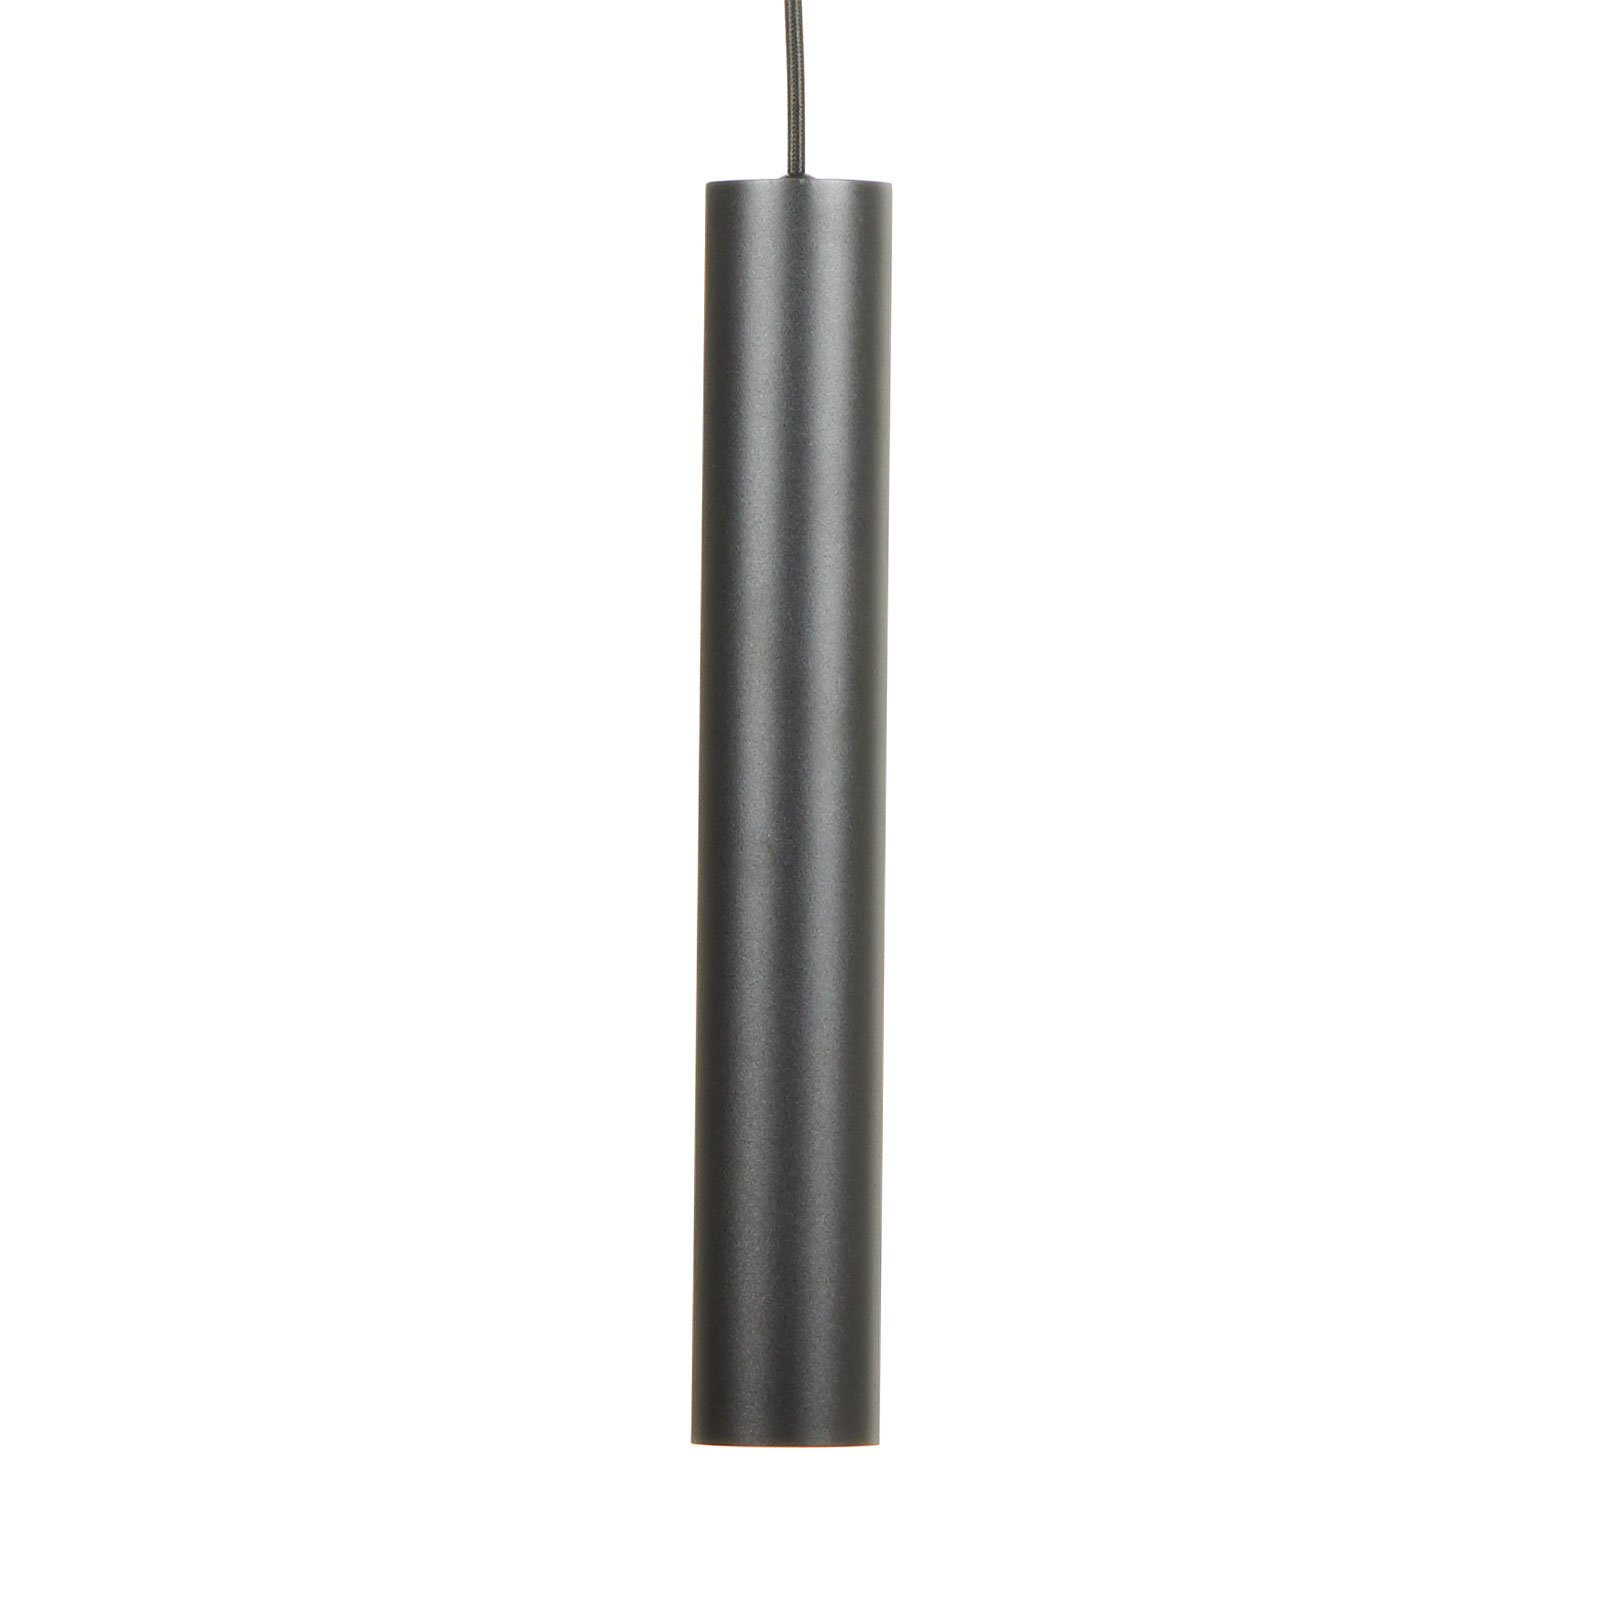 Suspension LED Look de forme allongée, noire